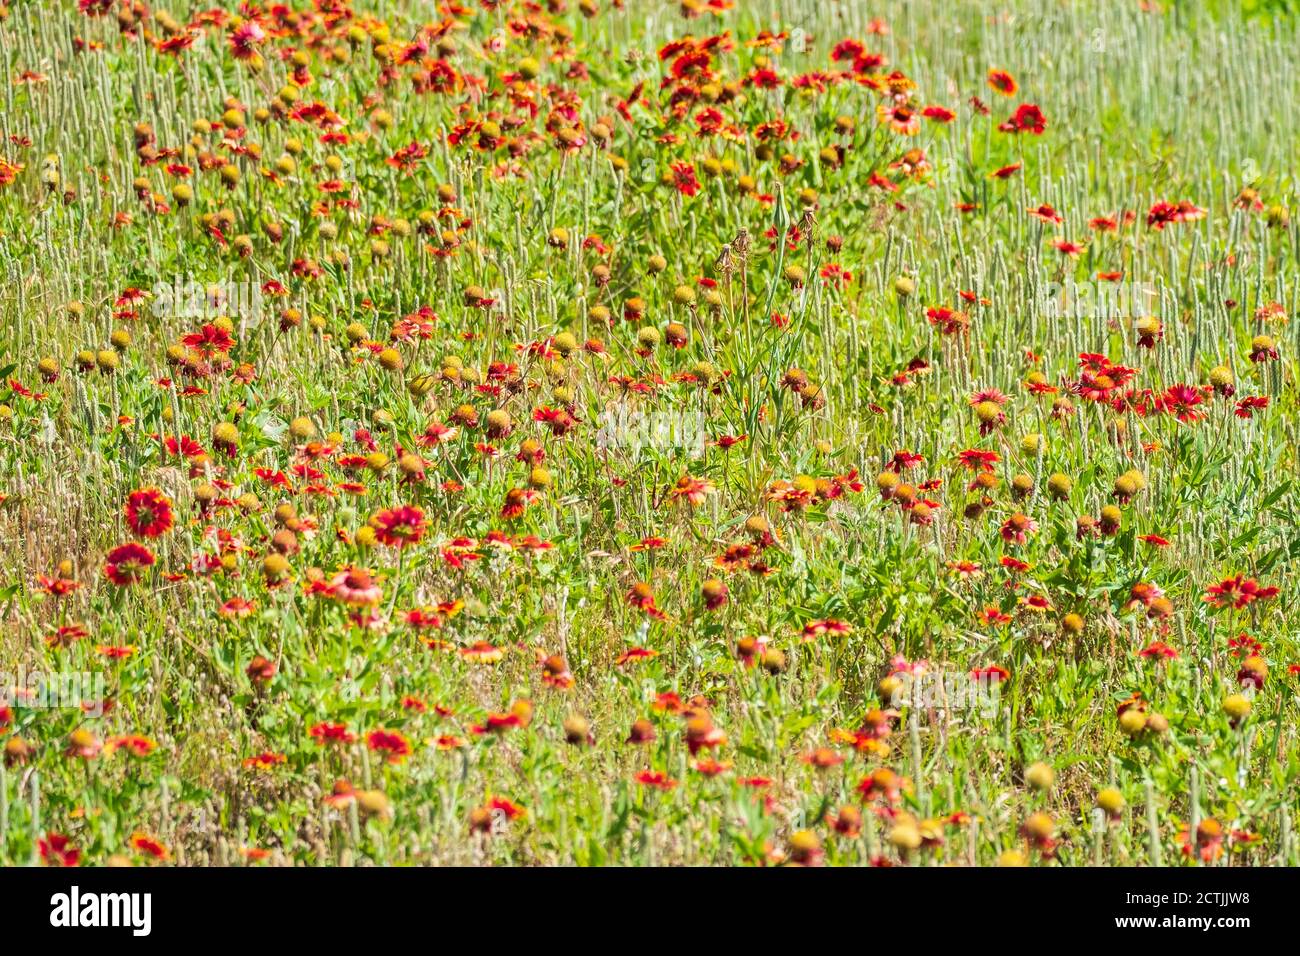 Indische Decke oder indische Decke, Gaillardia pulchella, wächst in den Great Salt Plains von Oklahoma, USA. Oklahoma State Flower. Stockfoto